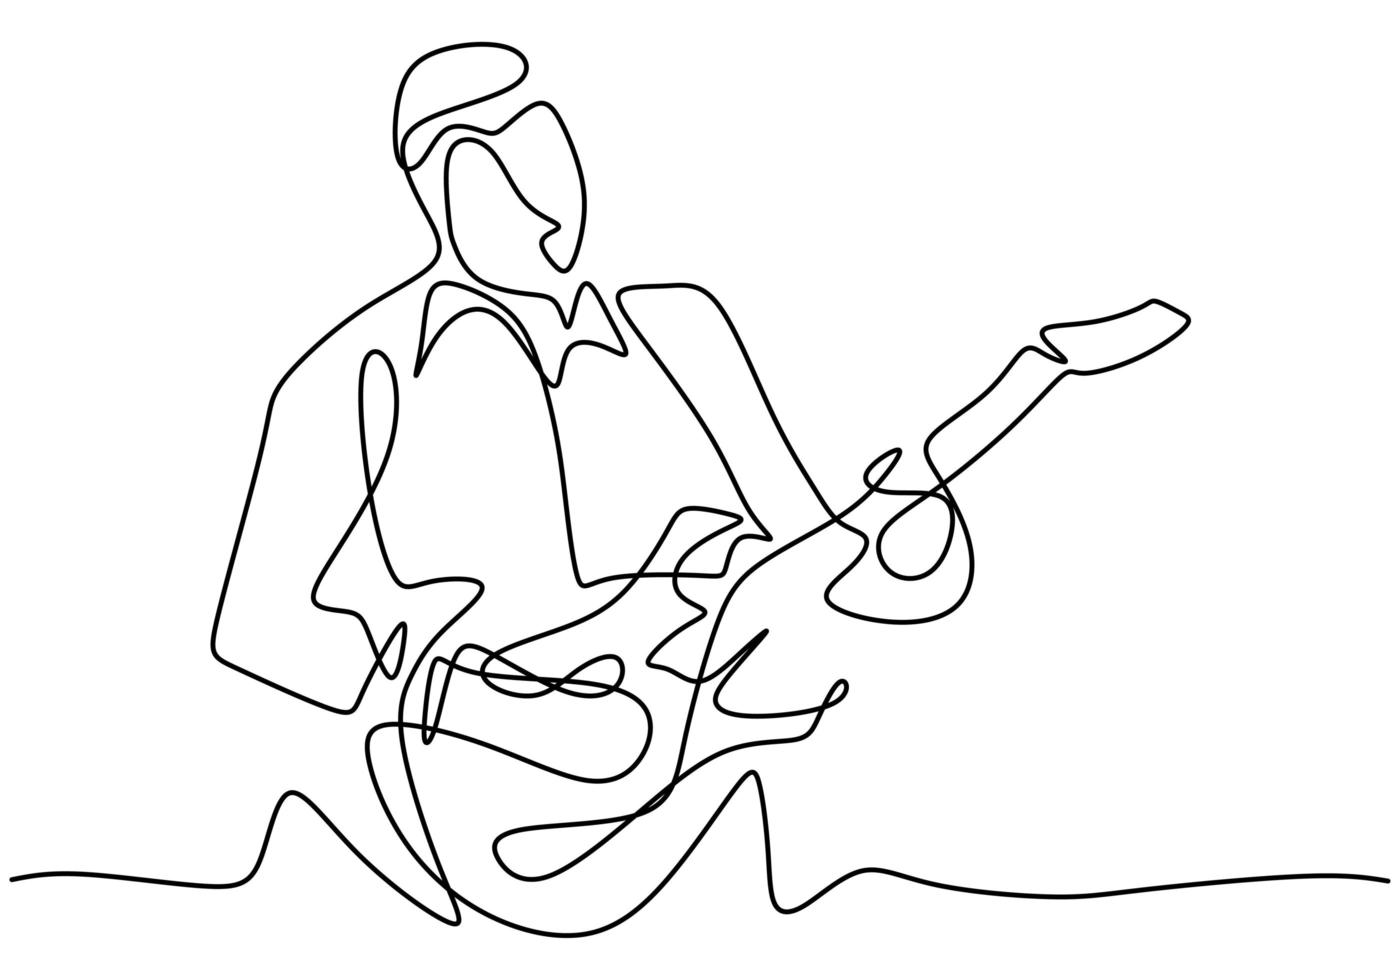 pessoa canta uma música com violão. jovem guitarrista masculino feliz. músico artista performance conceito single line draw design illustration vetor